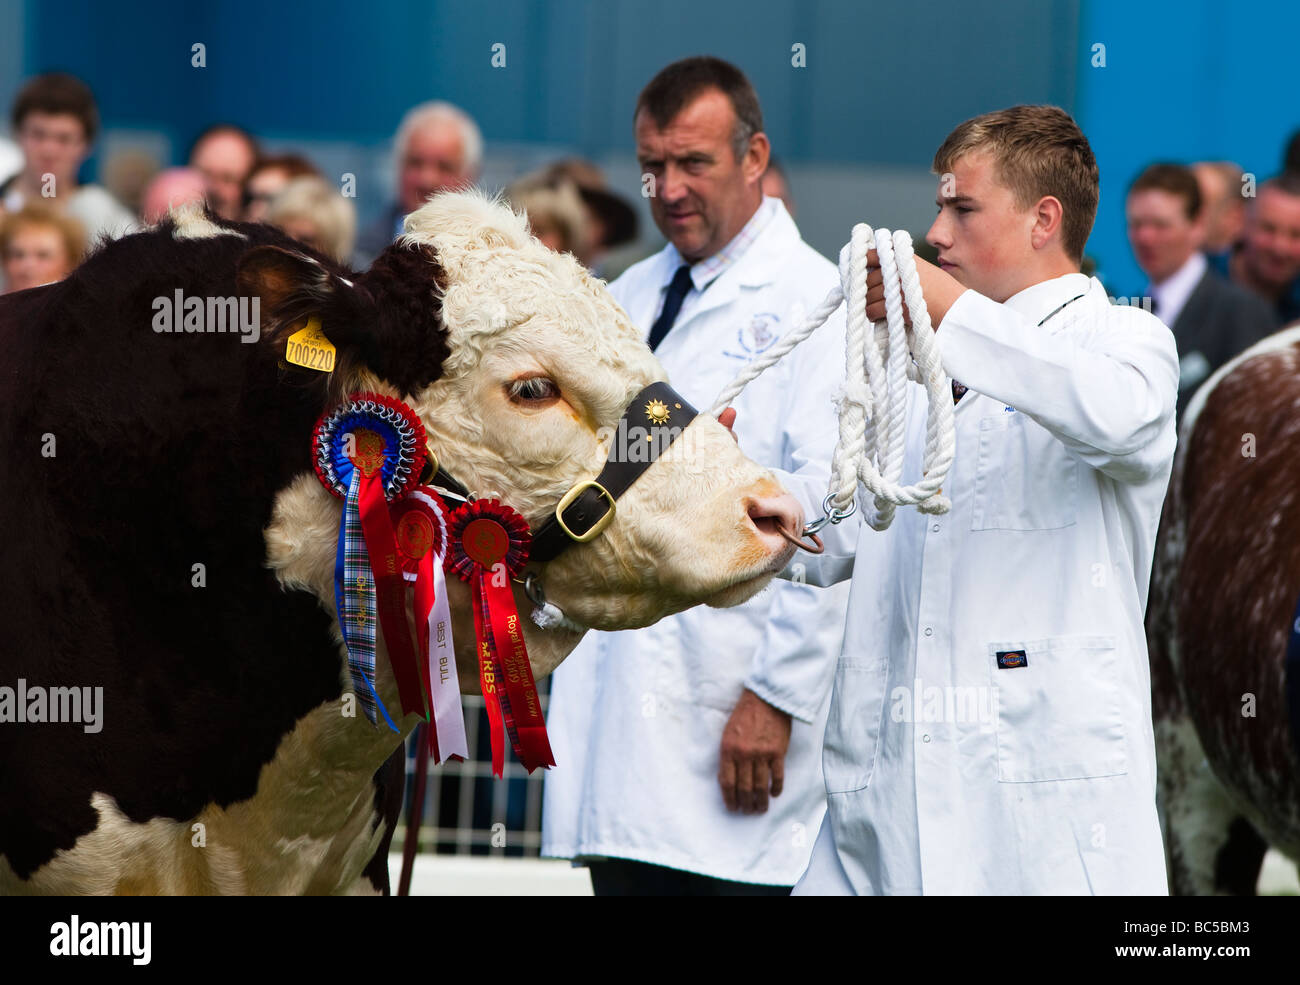 Uomo con una corda il servizio di tethering una vincita bull al Royal Highland Show di Edimburgo in Scozia Foto Stock